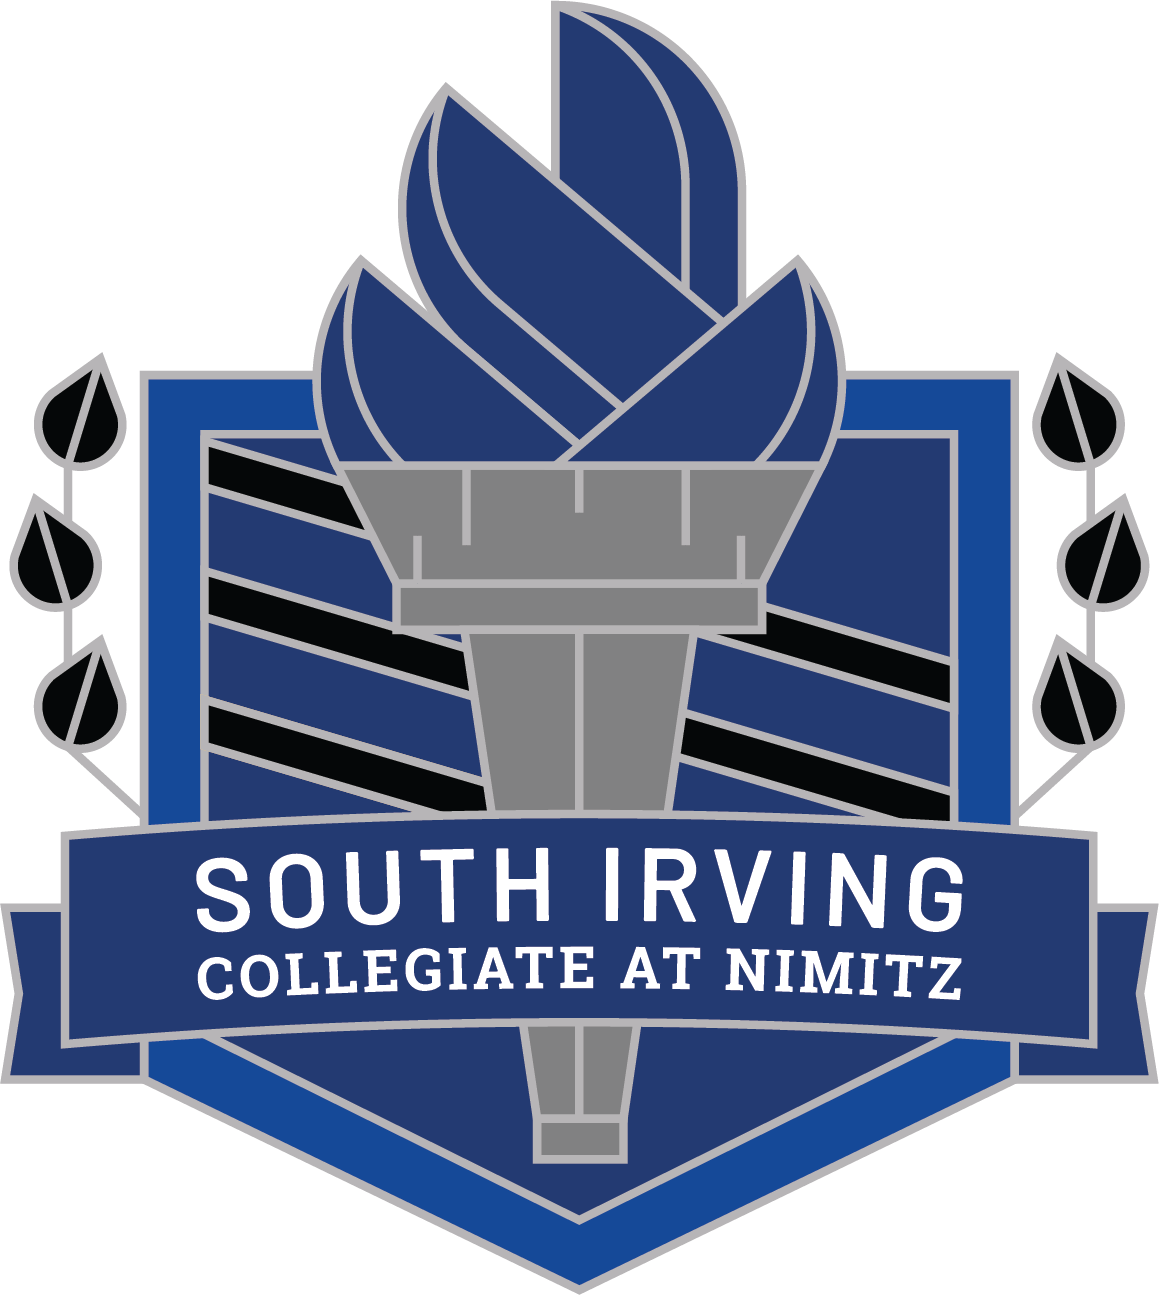 South Irving Collegiate at Nimitz